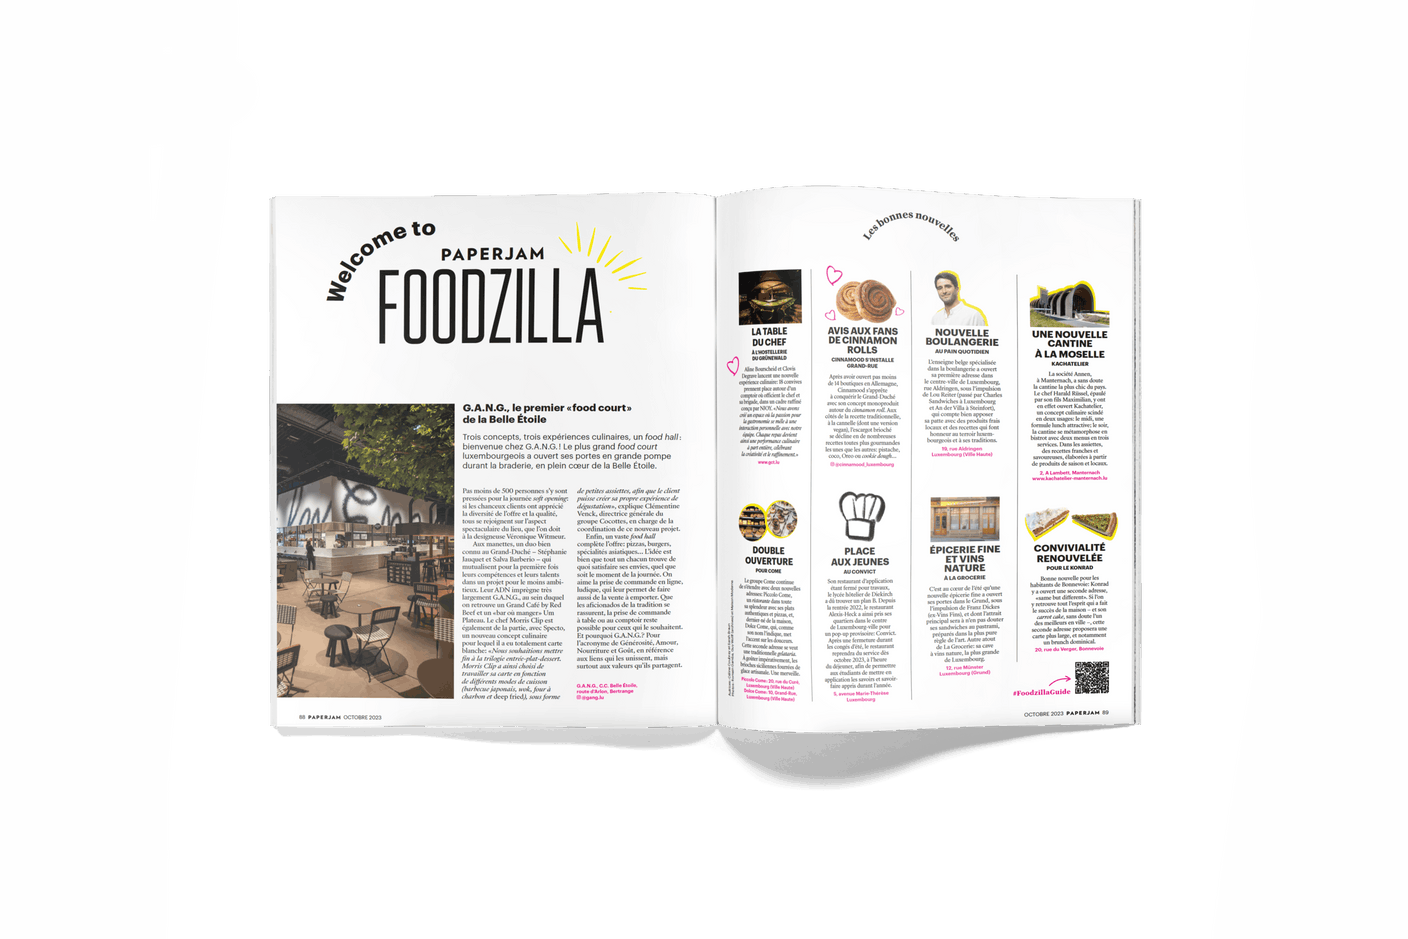 Les nouveautés pour les foodies à l’honneur dans la nouvelle partie Foodzilla du magazine. (Photo: Maison Moderne)